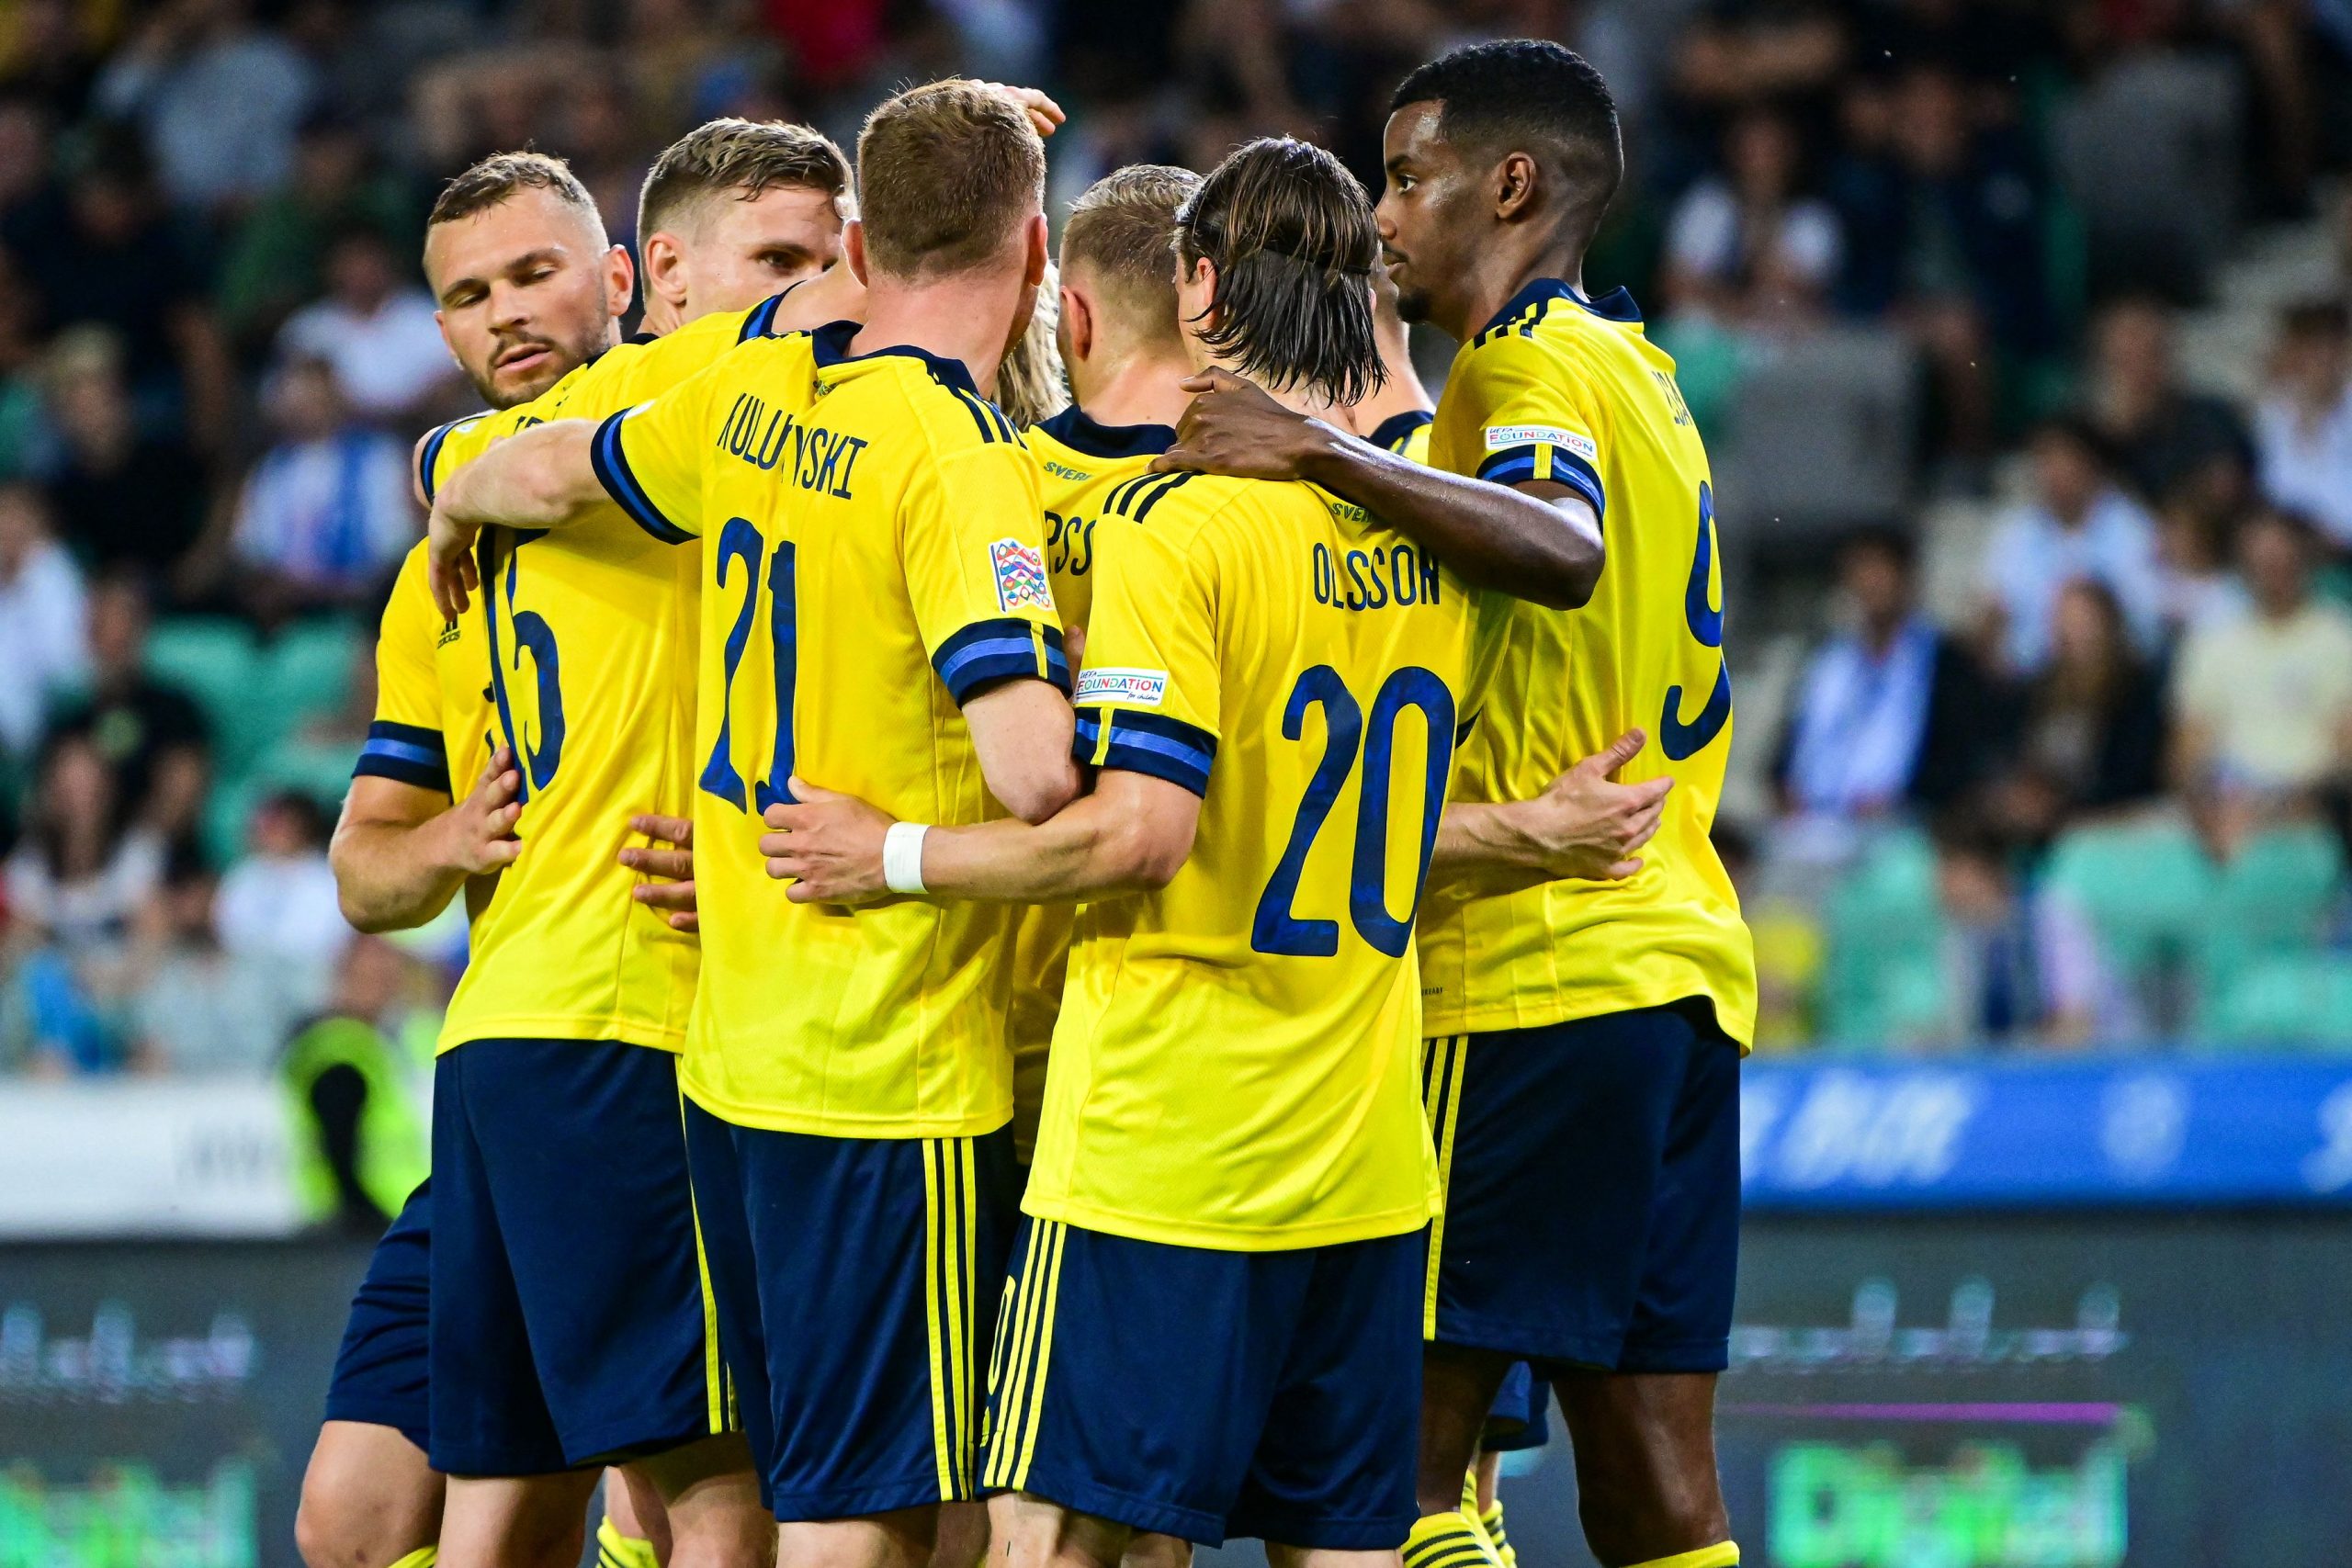 Kulusevski mette a tacere i fan cantilenanti con un brillante gol in solitaria per la Svezia